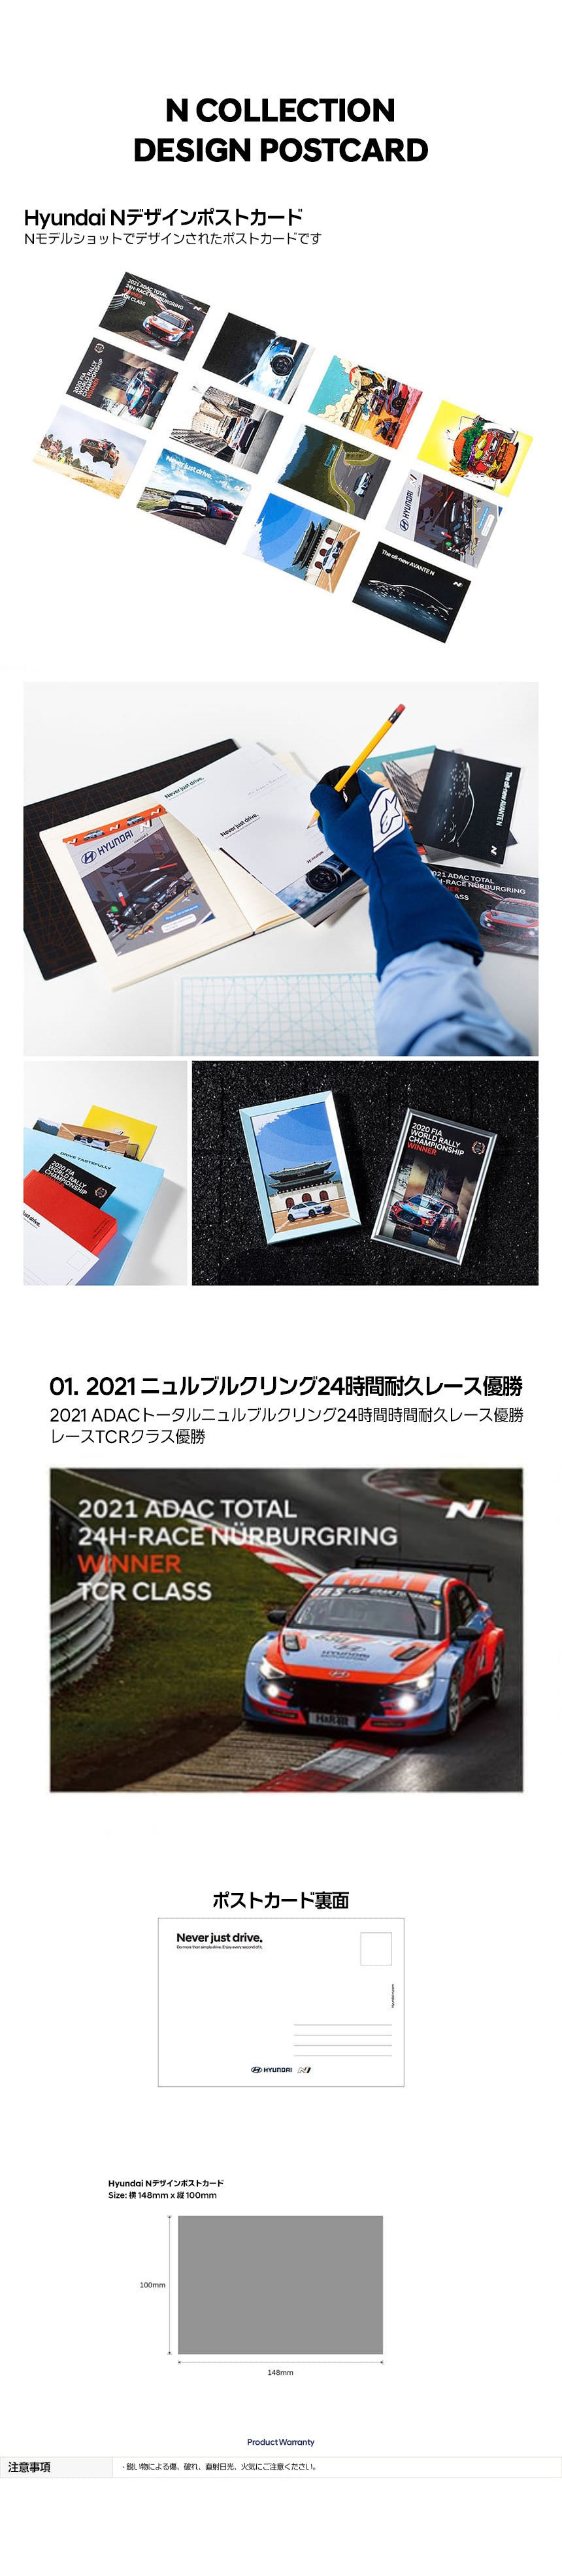 N Collection DESIGN POSTCARD-ヒュンダイ ジャパン オンラインショップ